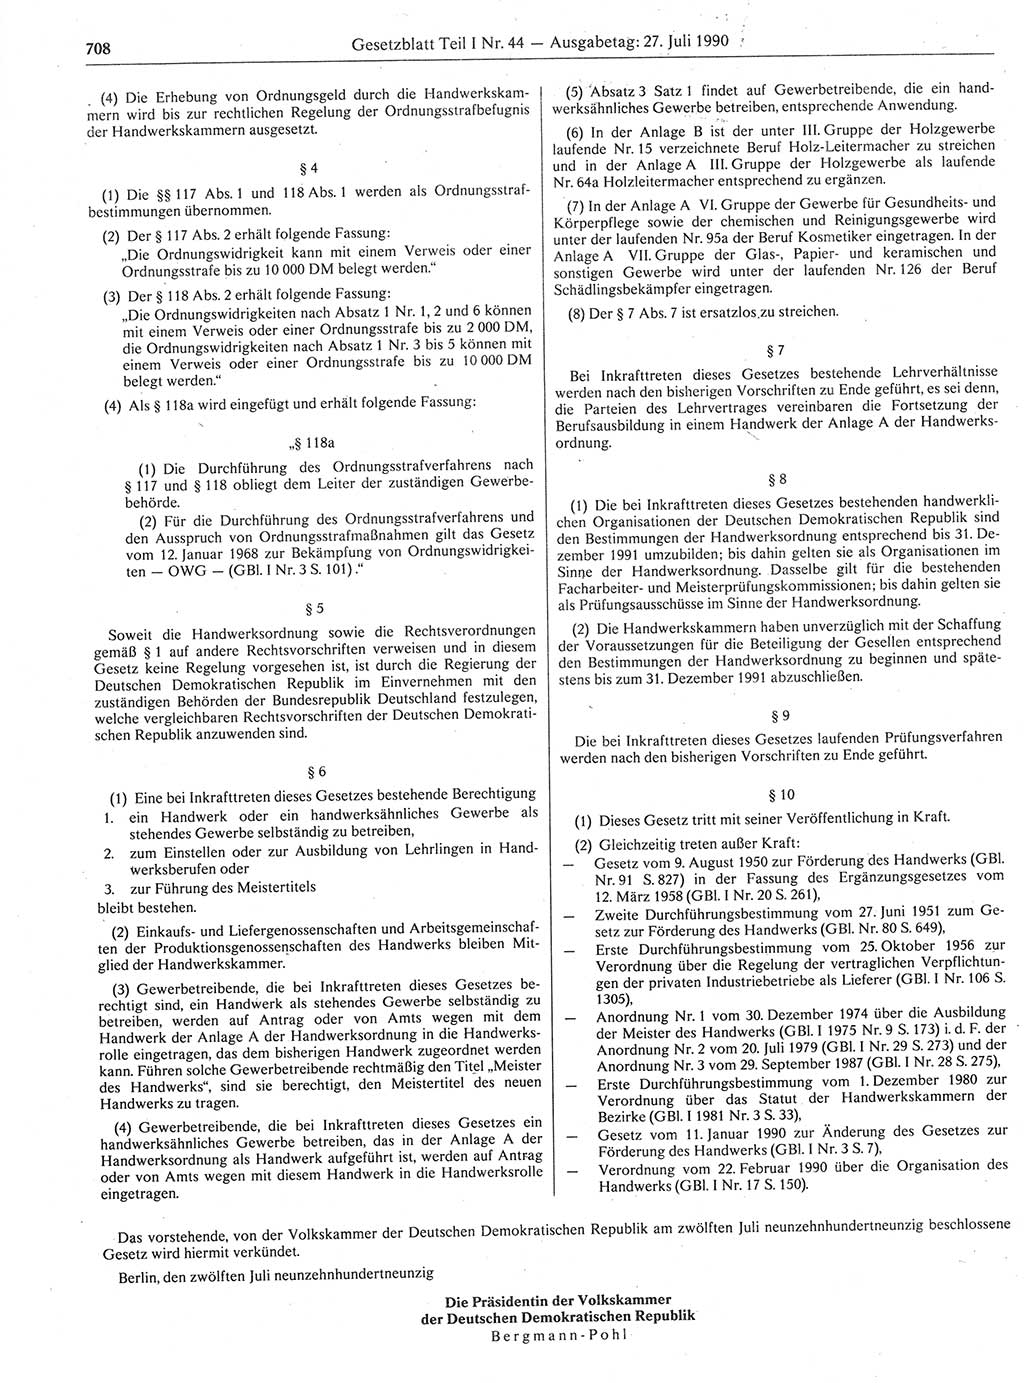 Gesetzblatt (GBl.) der Deutschen Demokratischen Republik (DDR) Teil Ⅰ 1990, Seite 708 (GBl. DDR Ⅰ 1990, S. 708)